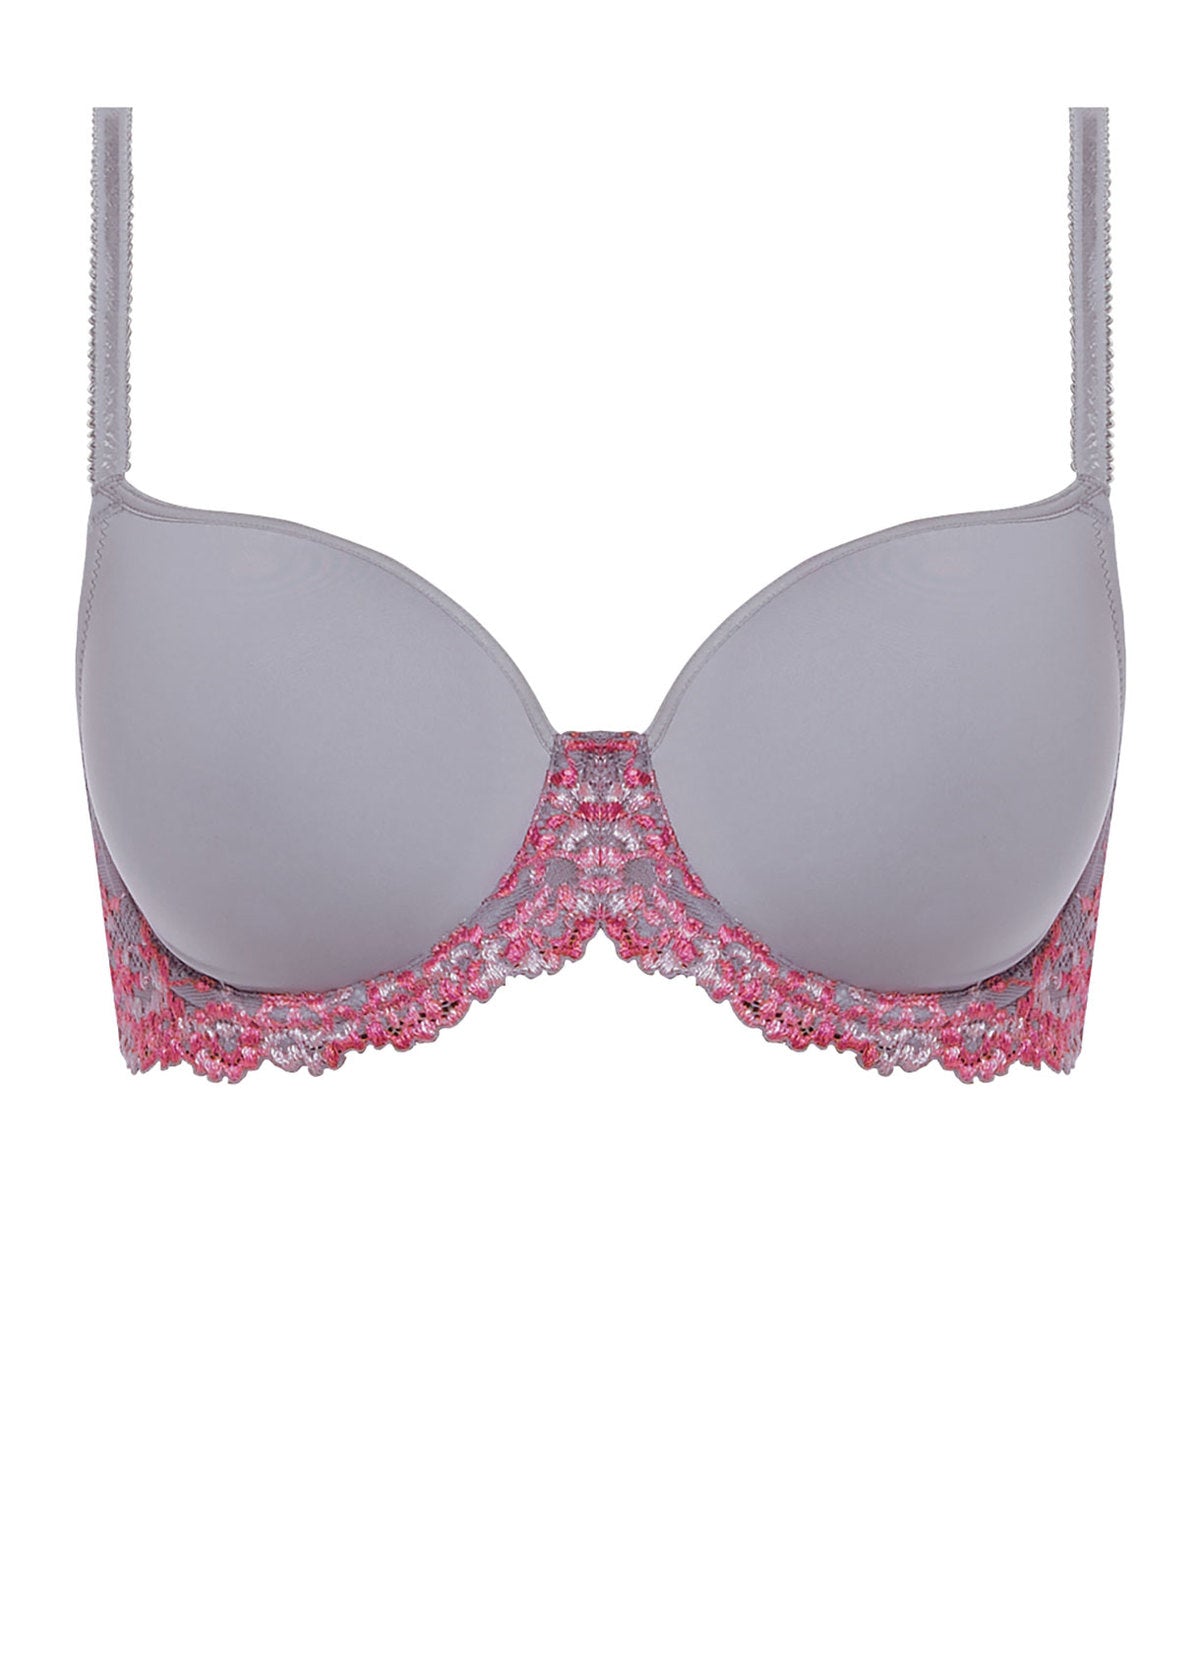 Wacoal Embrace Lace Contour Hot Pink Bra - Belle Femme Lingerie